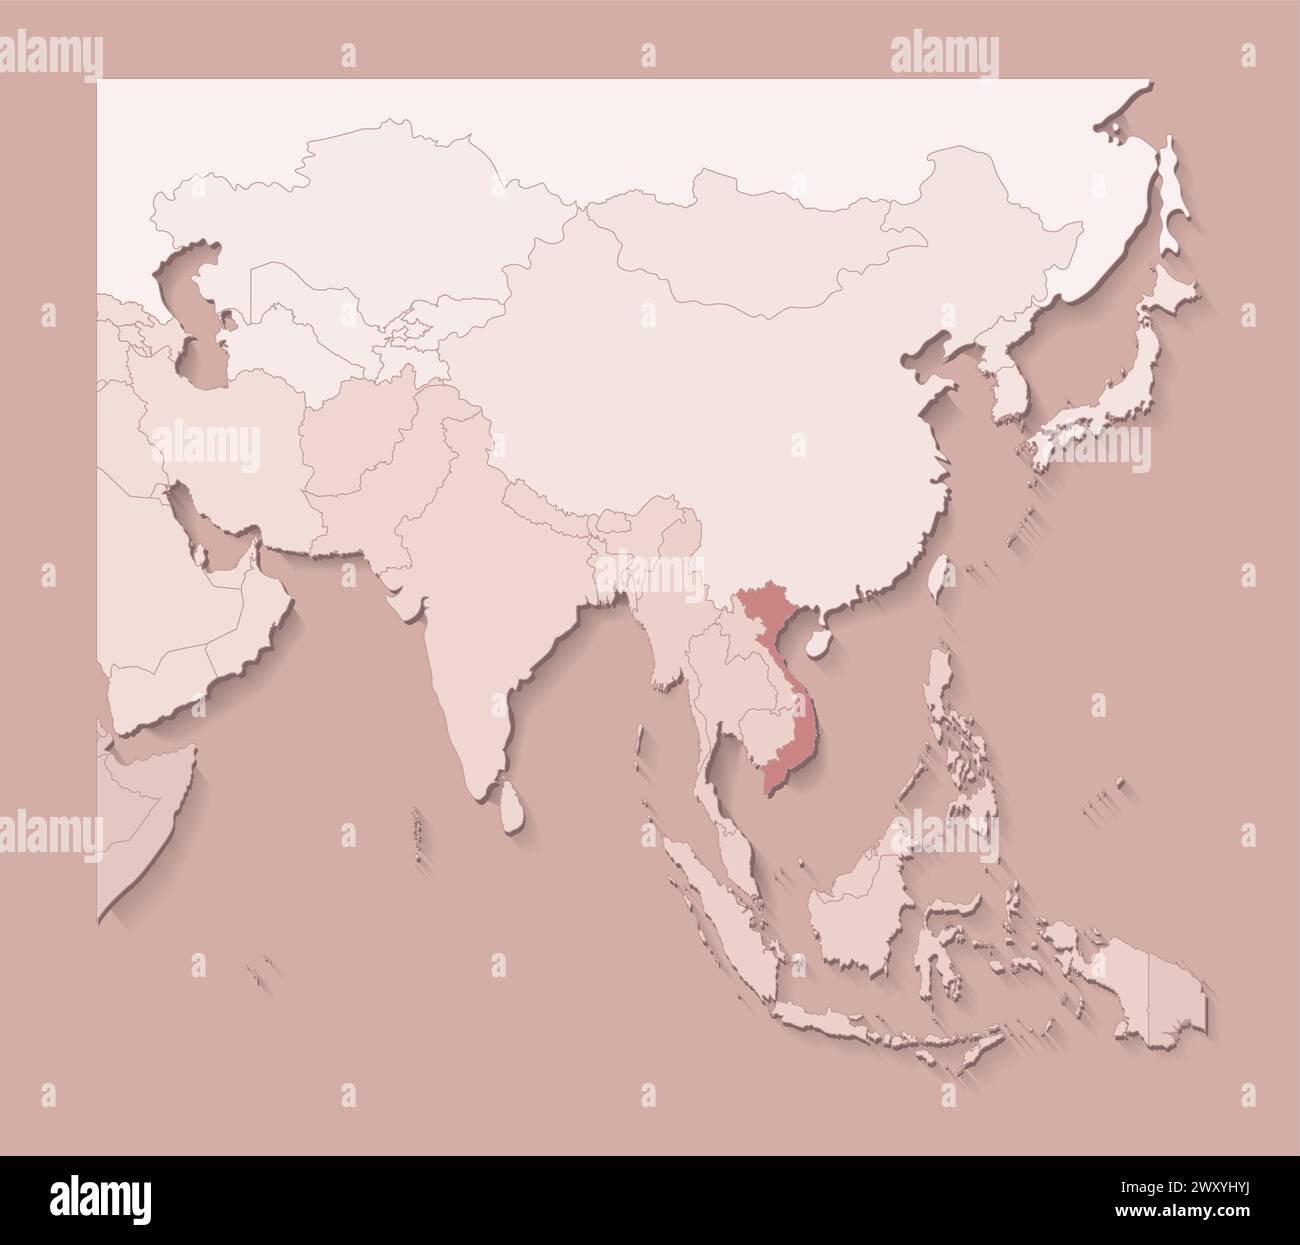 Illustrazione vettoriale con aree asiatiche con confini di stati e paese contrassegnato Vietnam. Mappa politica di colore marrone con regioni. Sfondo beige Illustrazione Vettoriale